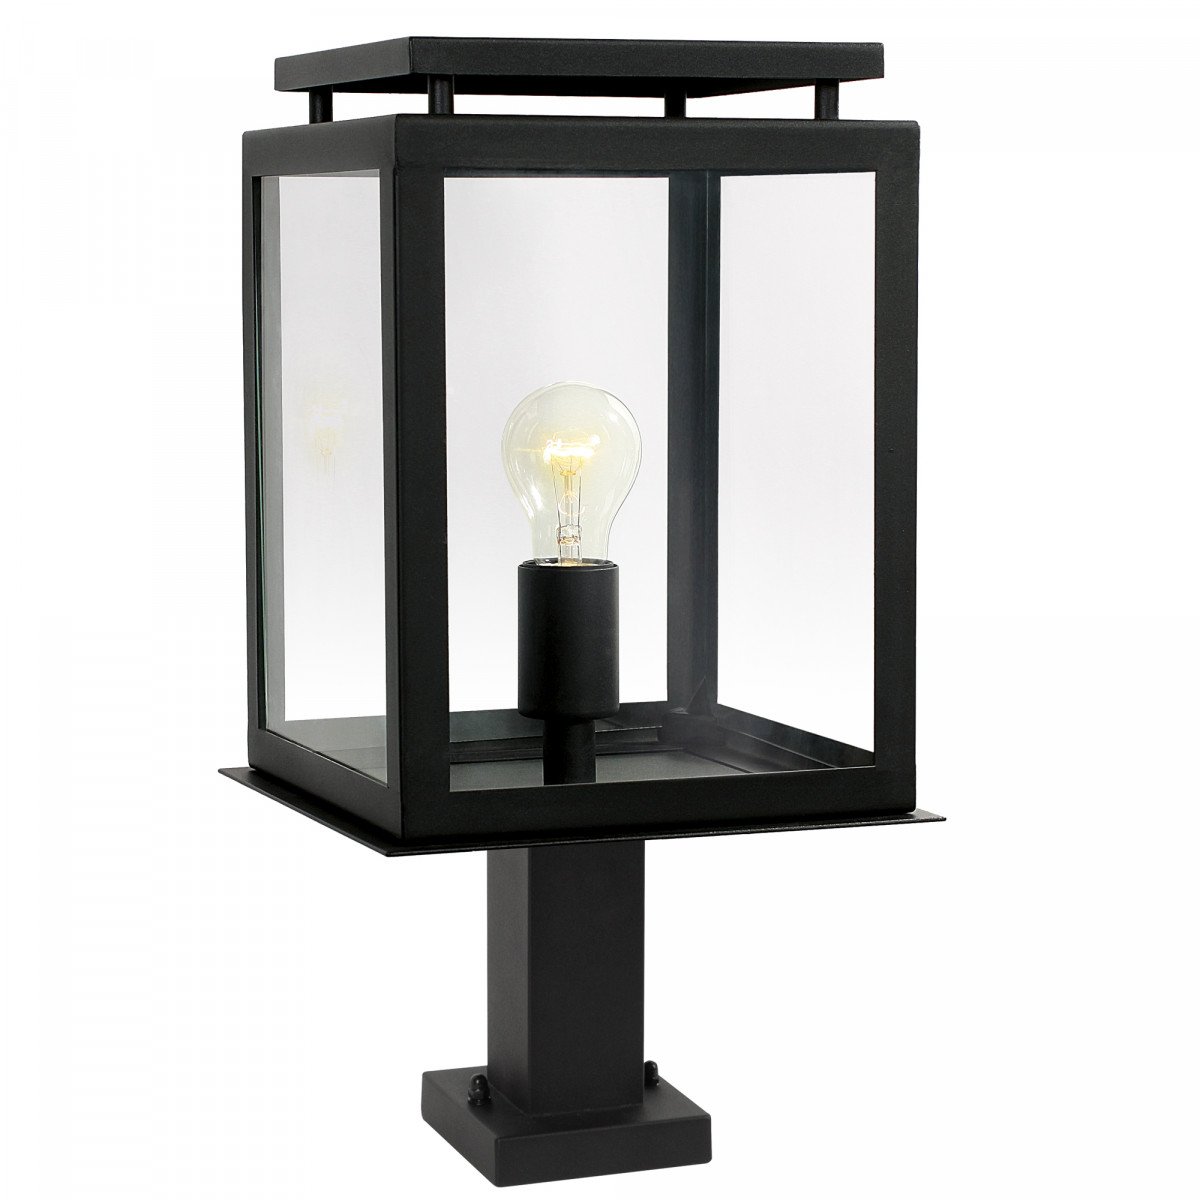 Potelet extérieur De Vecht noire, lampe d'extérieur, De Vecht de la marque KS Lighting, stylée, épurée, éclairage moderne, pour l'extérieur